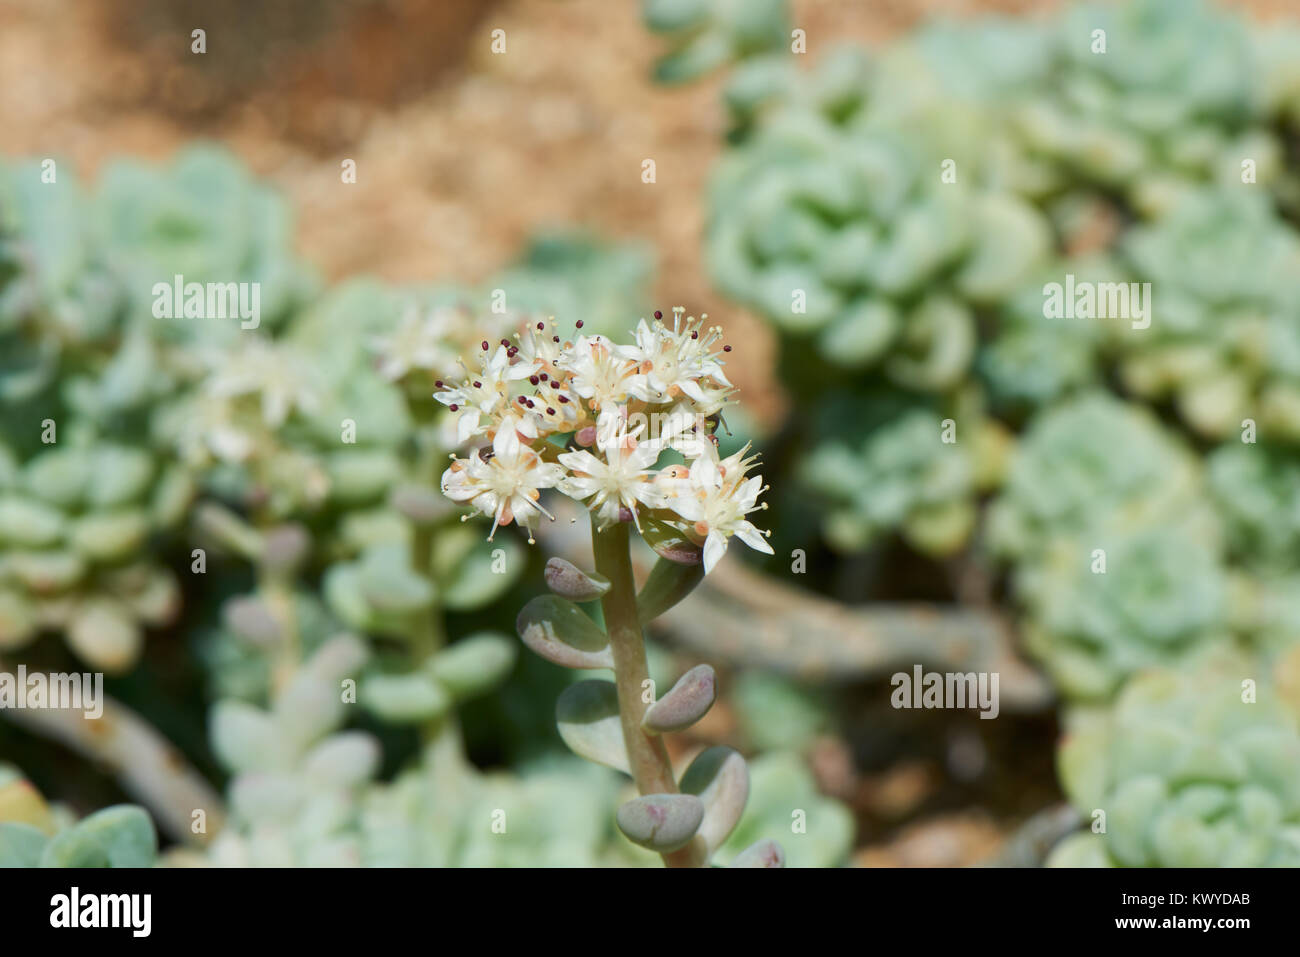 Sedum clavatum flor. S. clavatum es una planta suculenta de la familia de las crasuláceas. Tiene color blanco, flores en forma de estrella a mediados o finales de primavera. Foto de stock